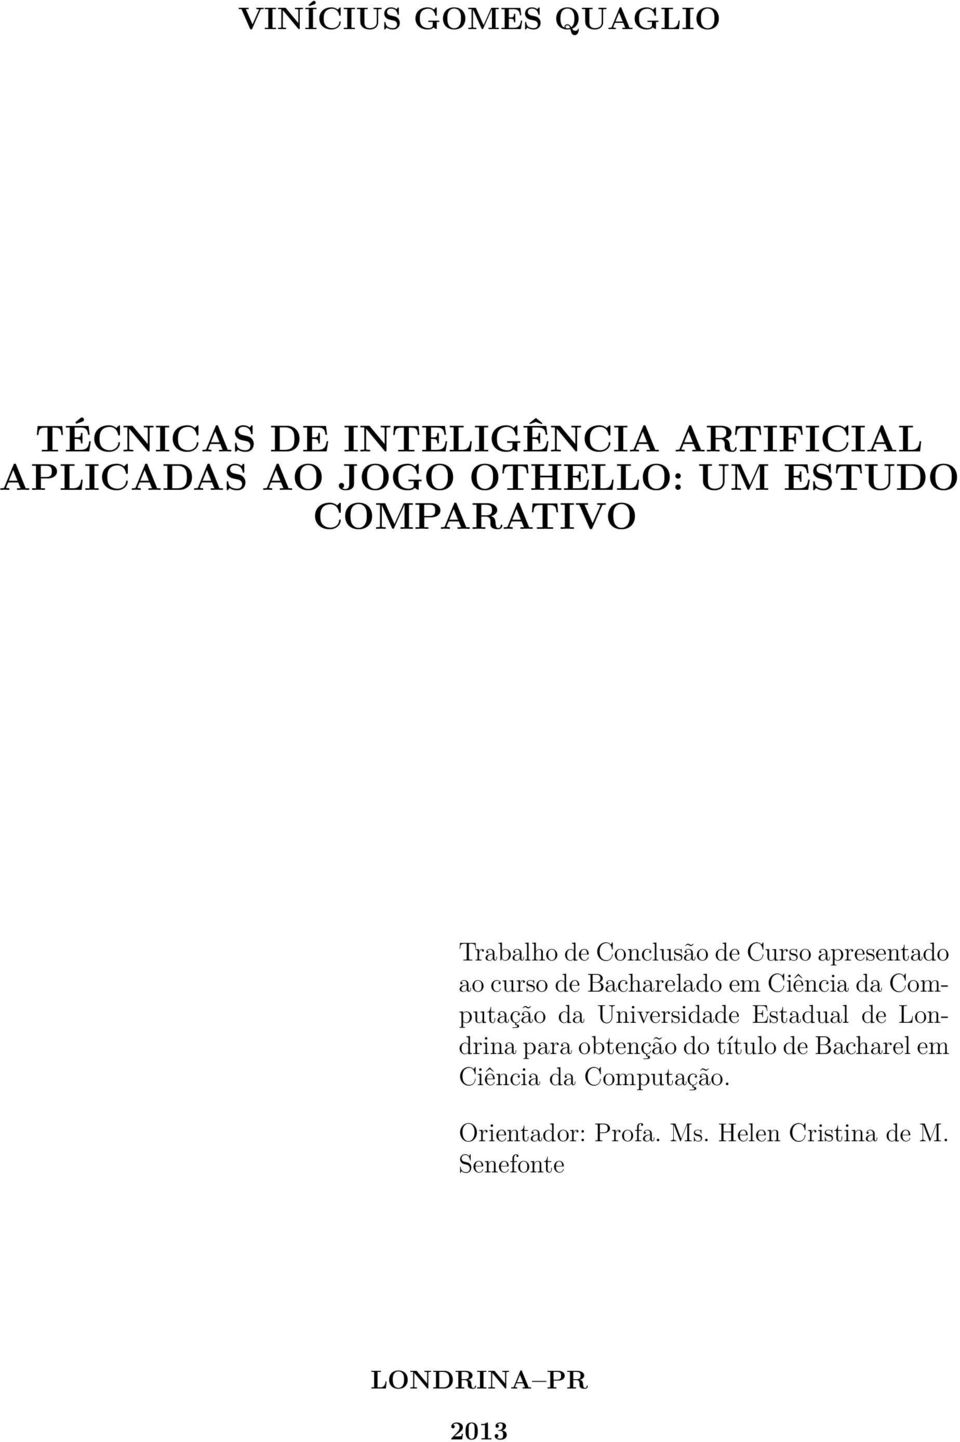 Ciência da Computação da Universidade Estadual de Londrina para obtenção do título de